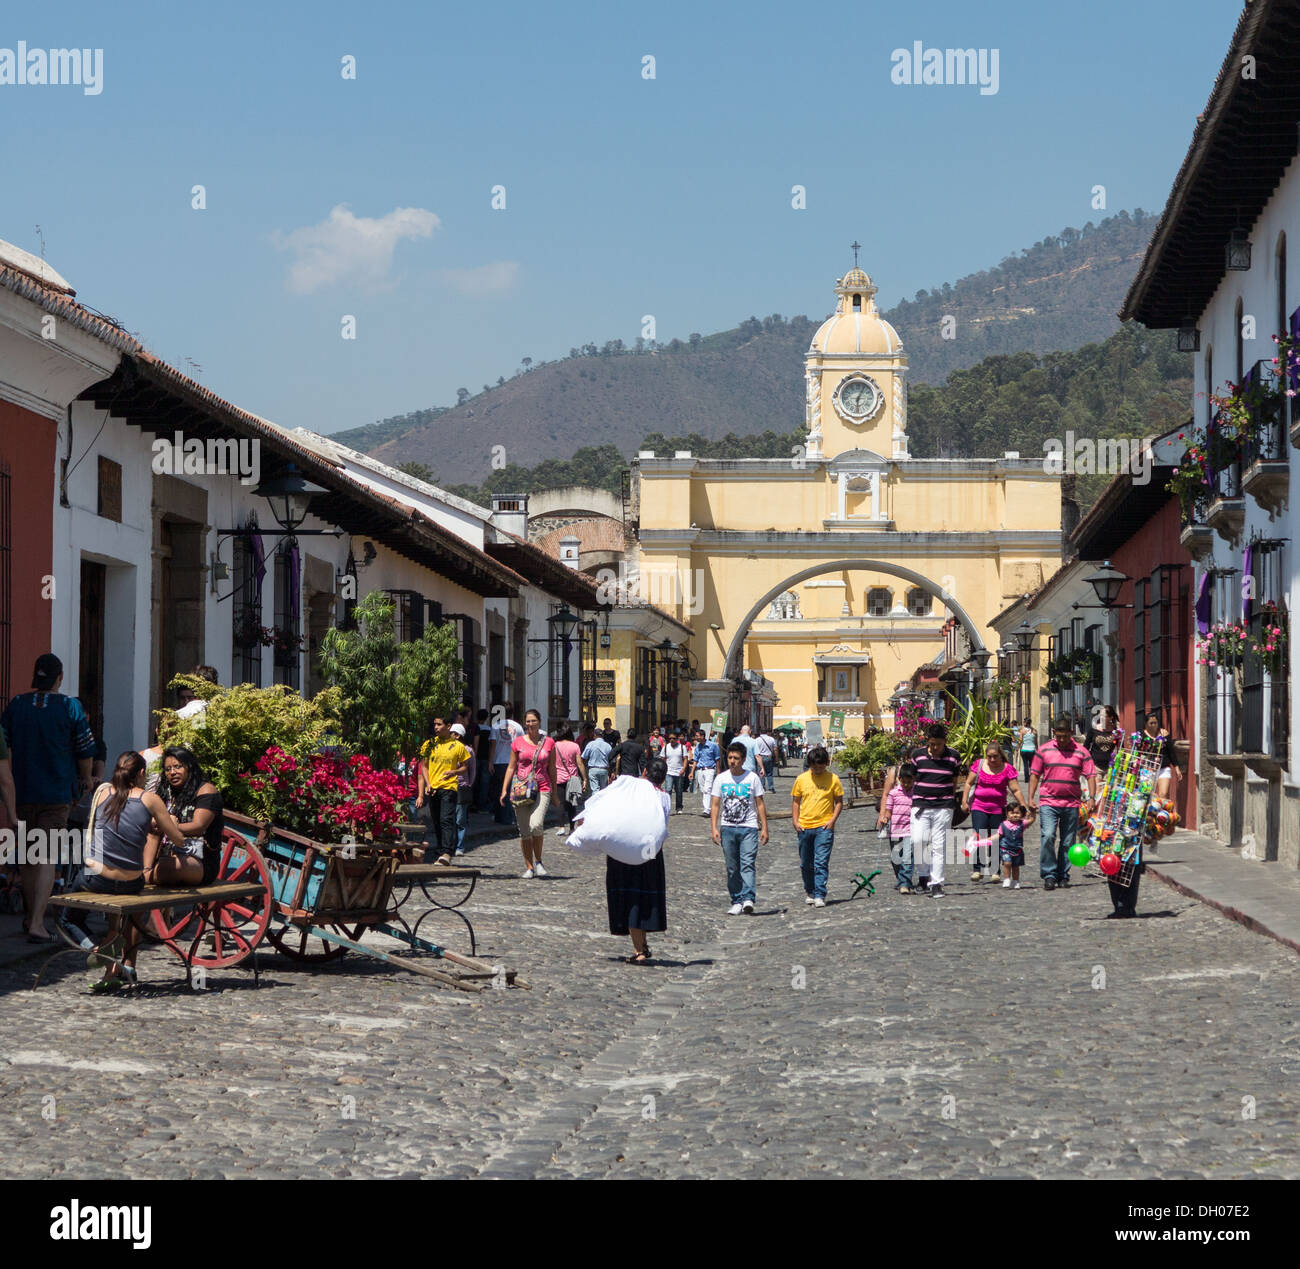 Antigua Guatemala è negli altipiani centrali del Guatemala - un sito Patrimonio Mondiale dell'UNESCO. Foto Stock